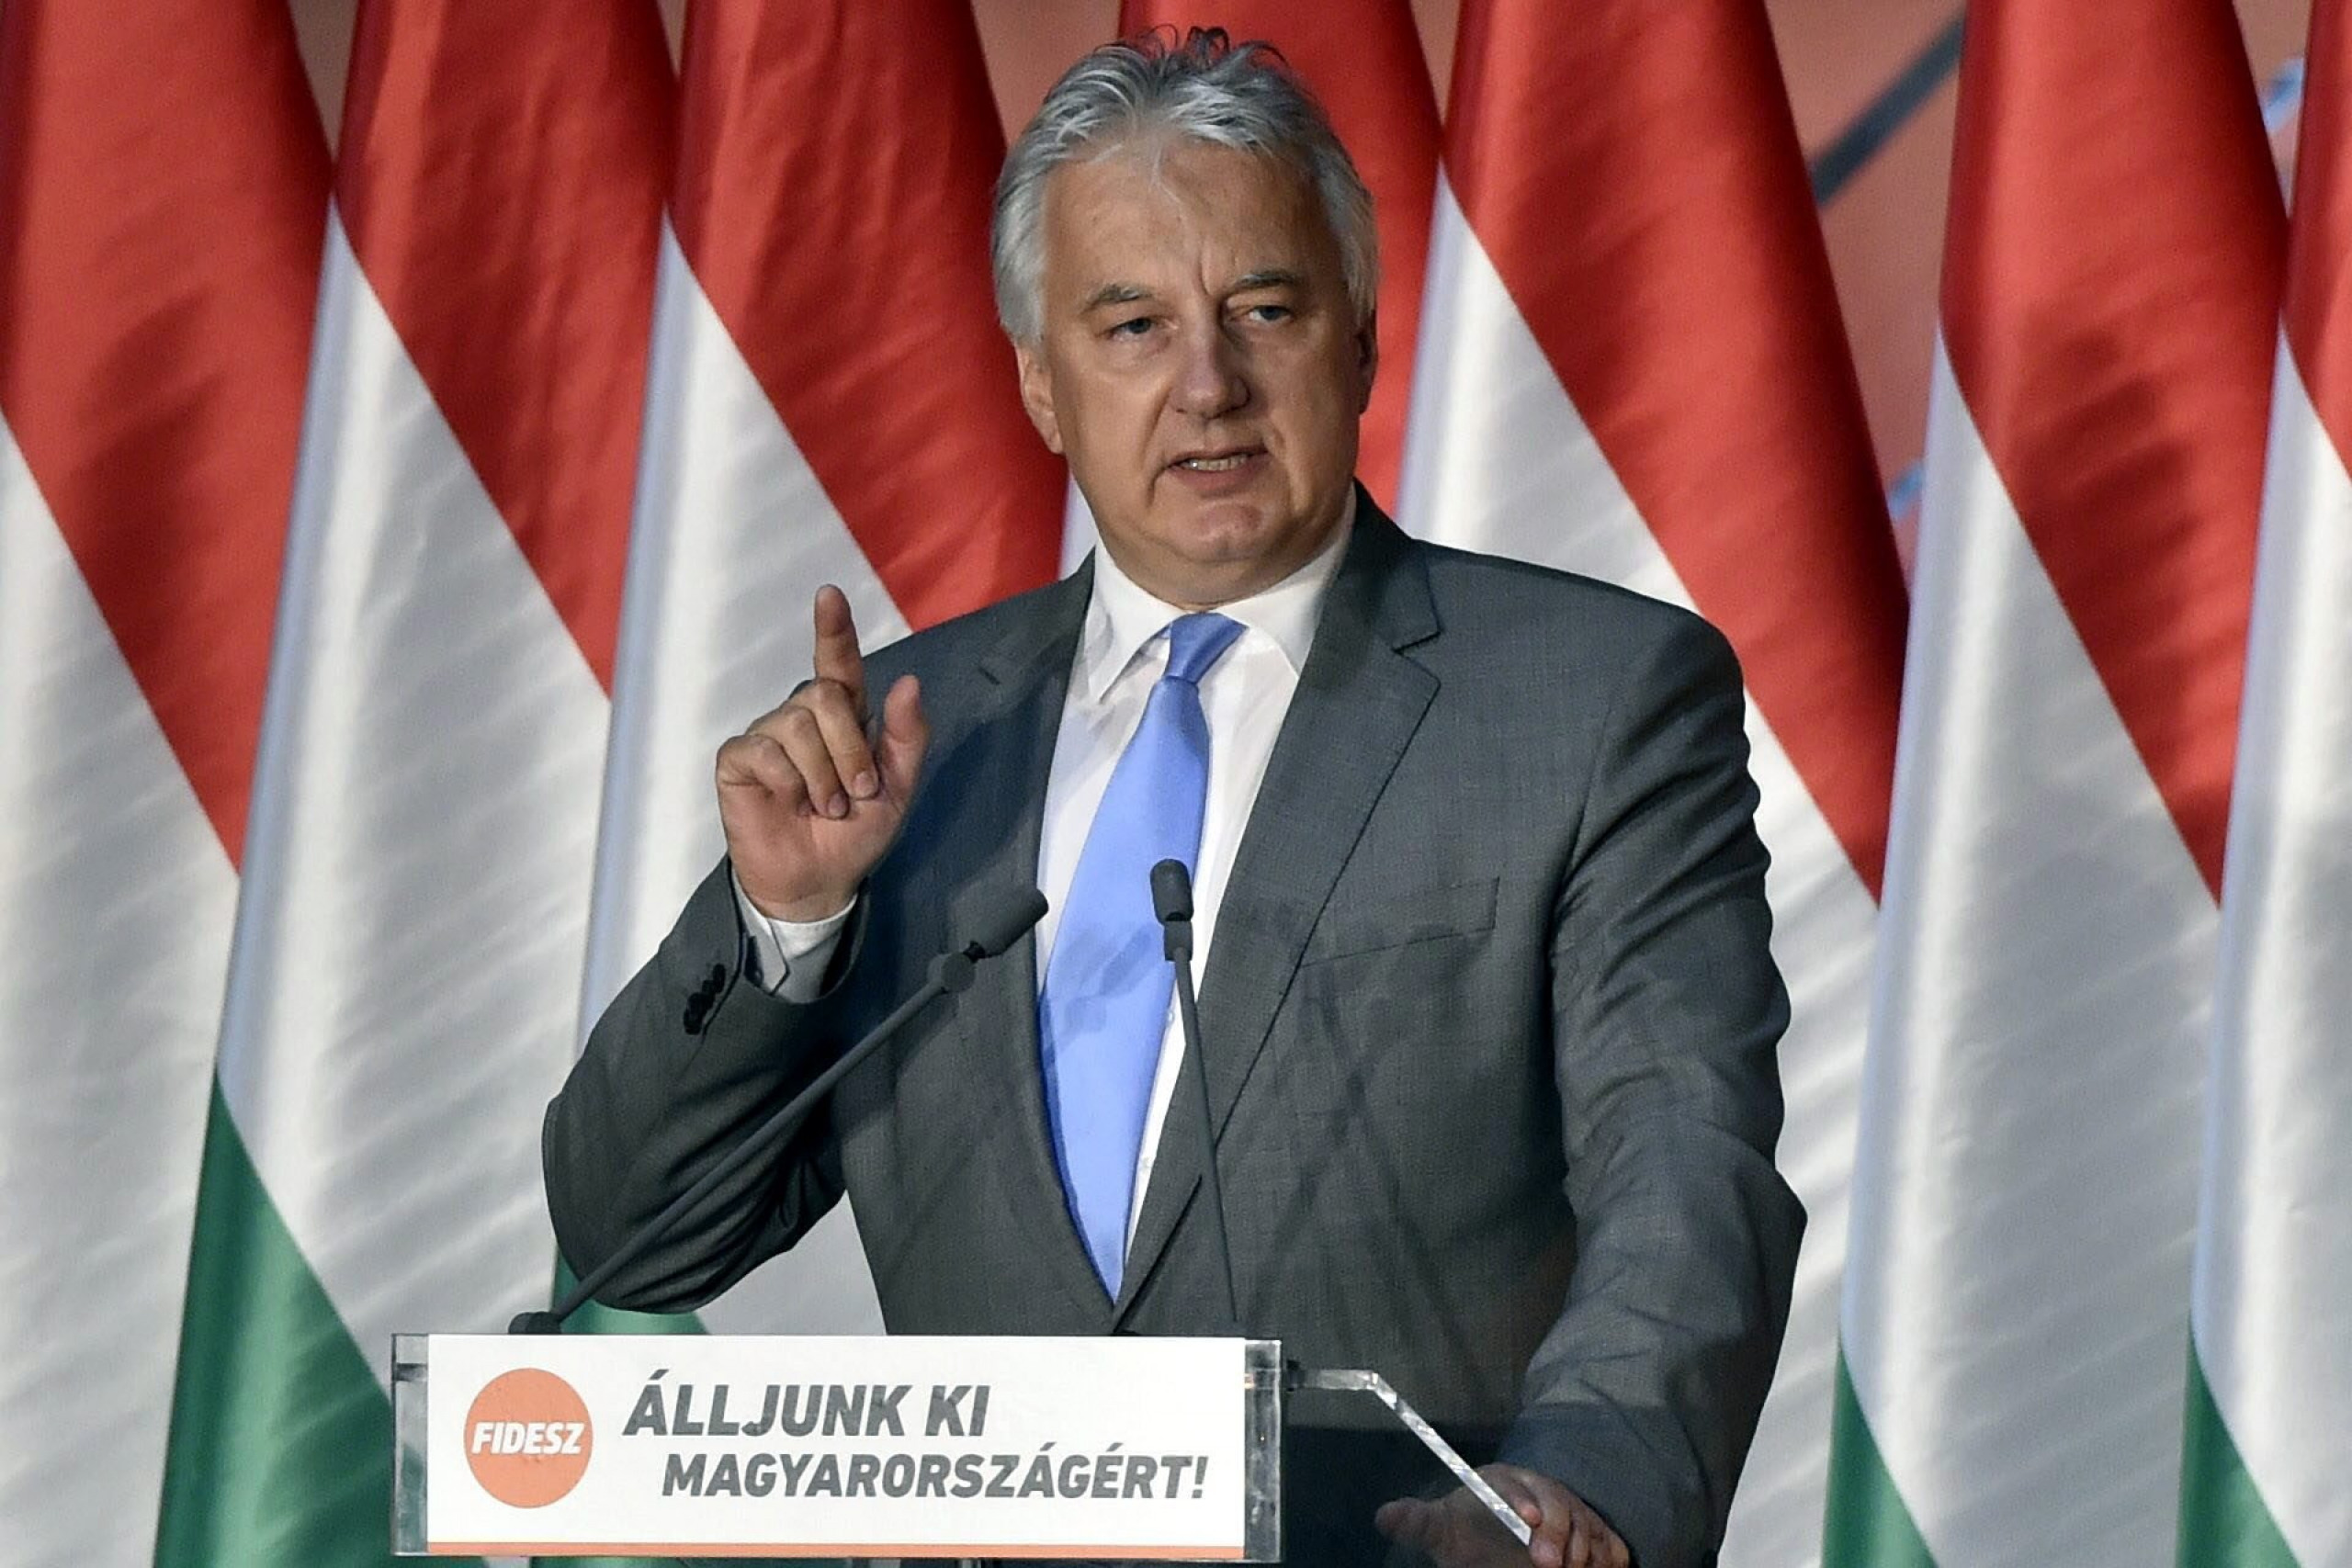  Вице-премьер Венгрии Жолт Шемьен